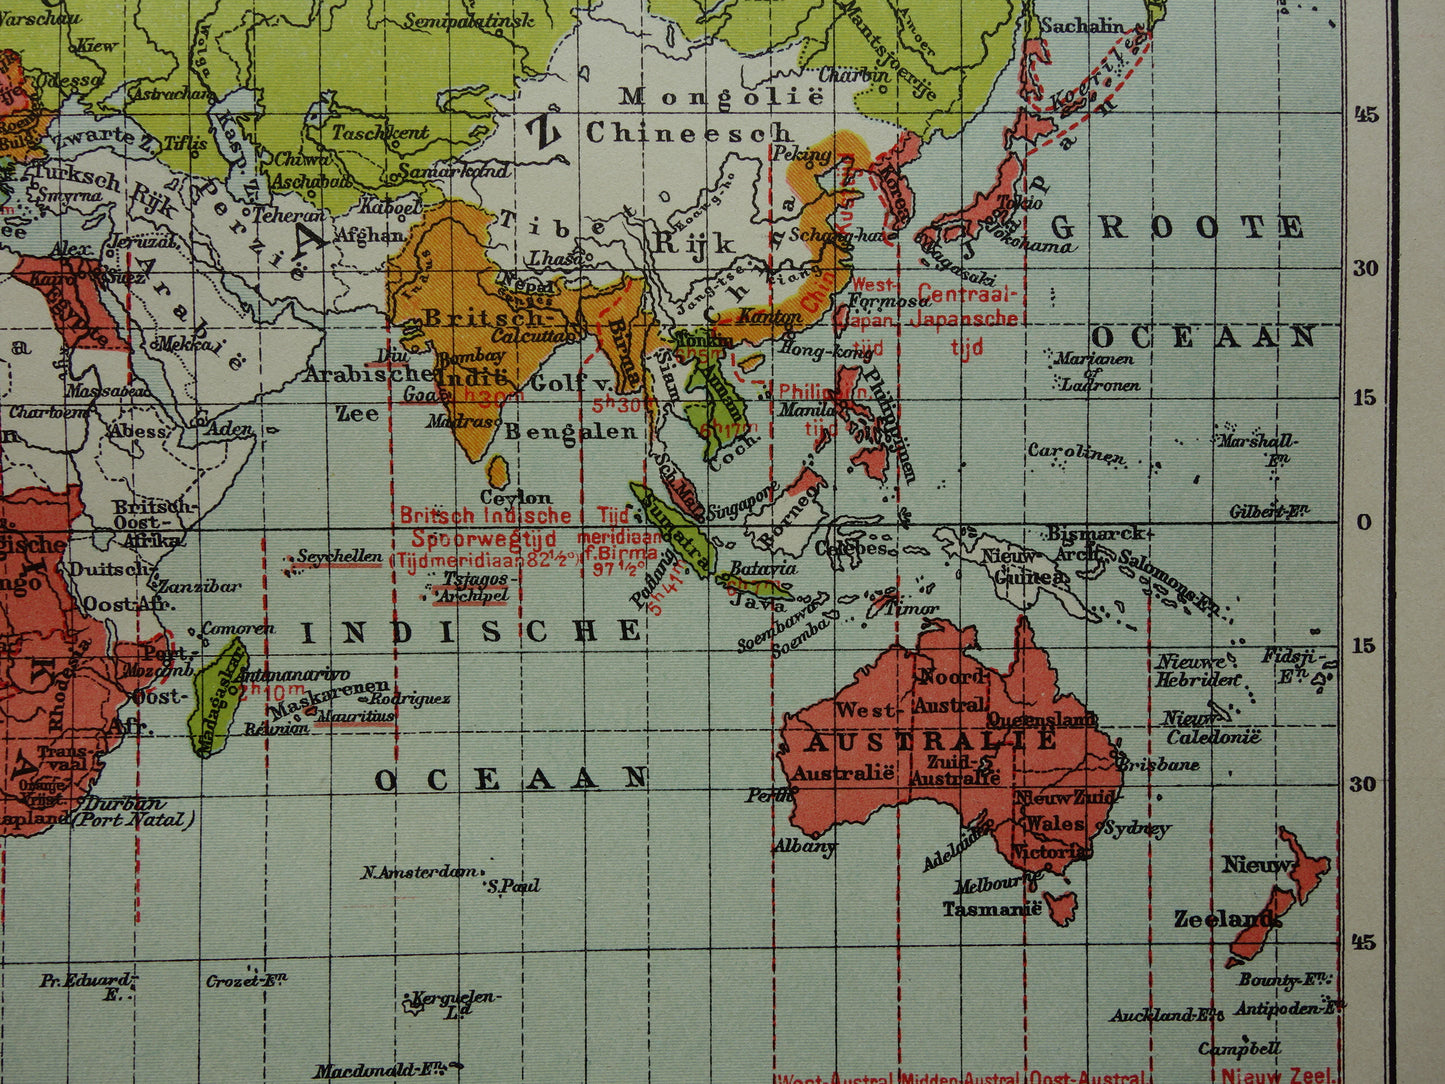 WERELDKAART oude kaart van de wereld met tijdzones 1907 originele antieke Nederlandse landkaart historische kaarten wintertijd zomertijd